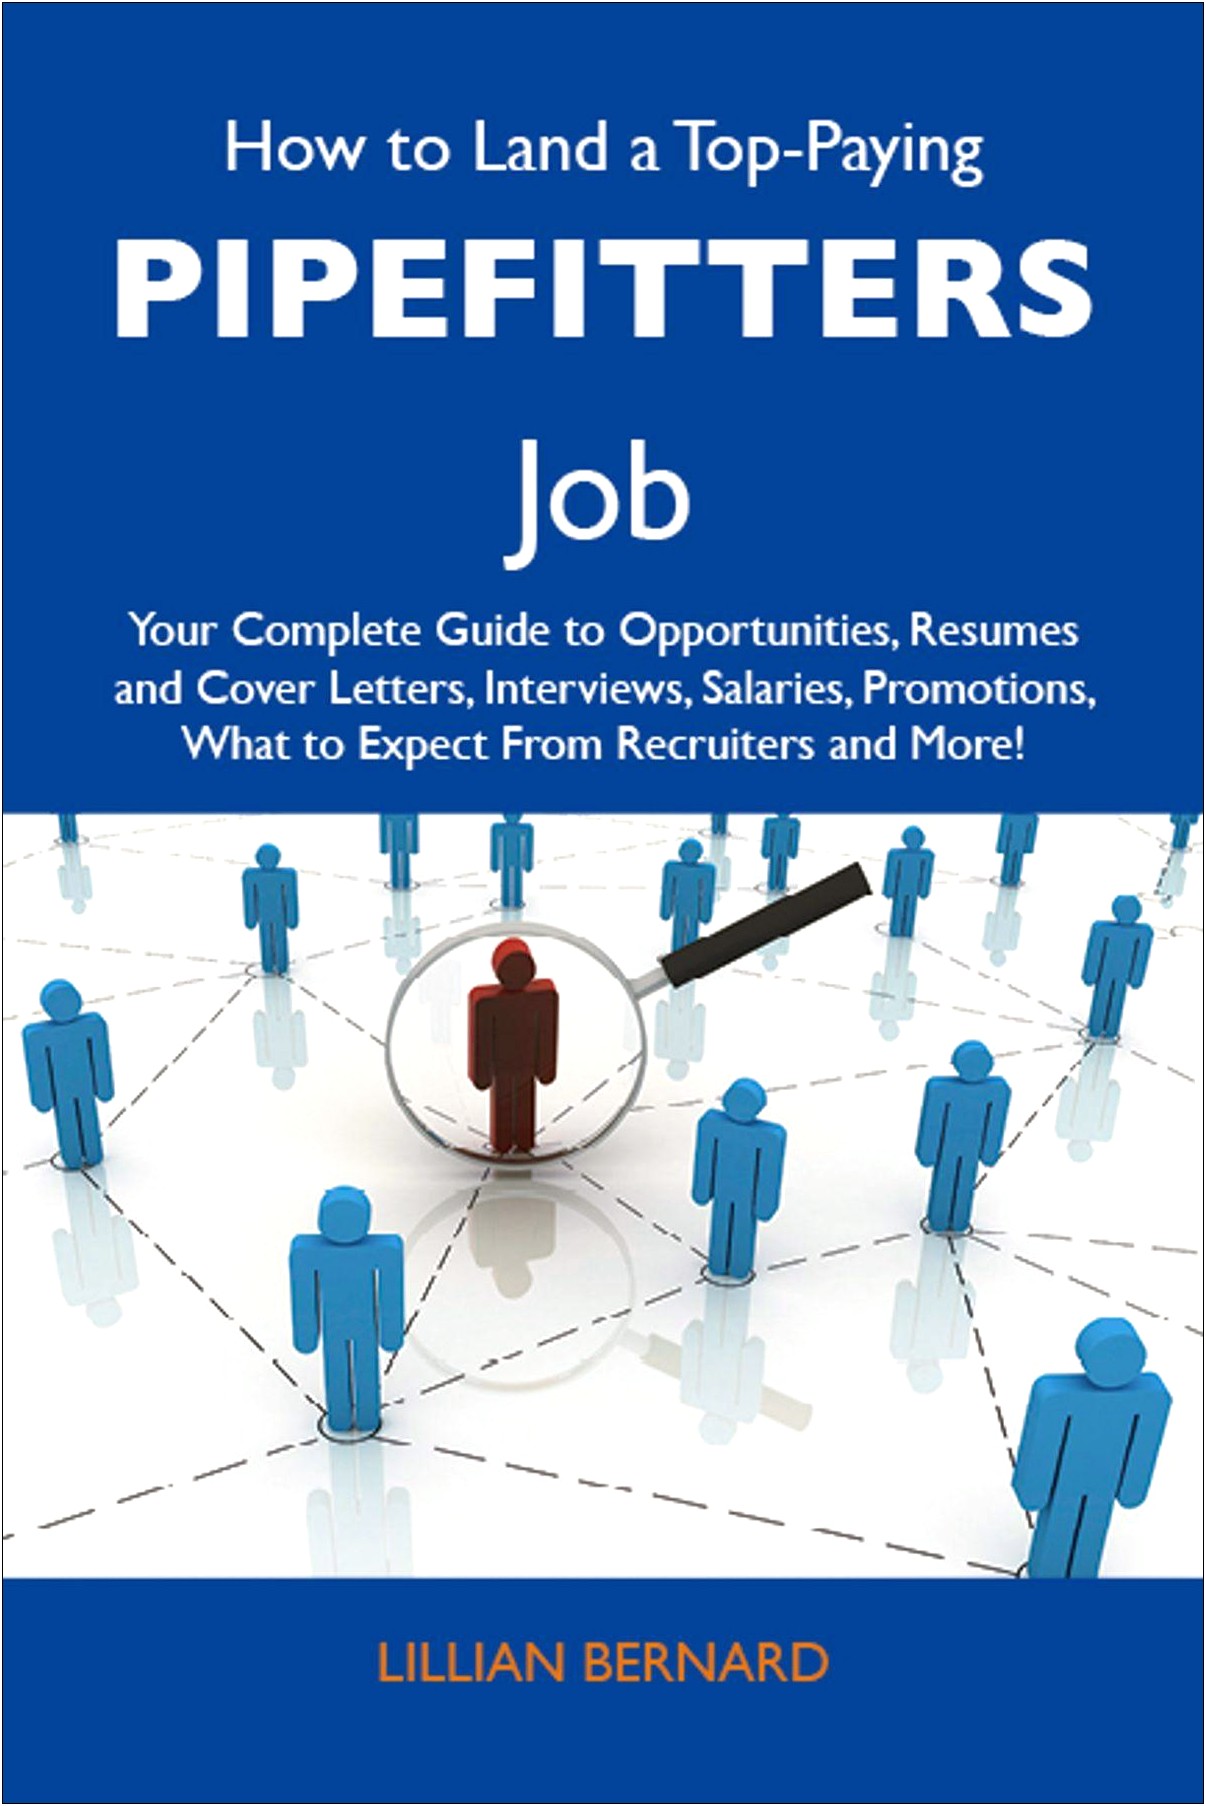 Pipefitter Job Description For Resume